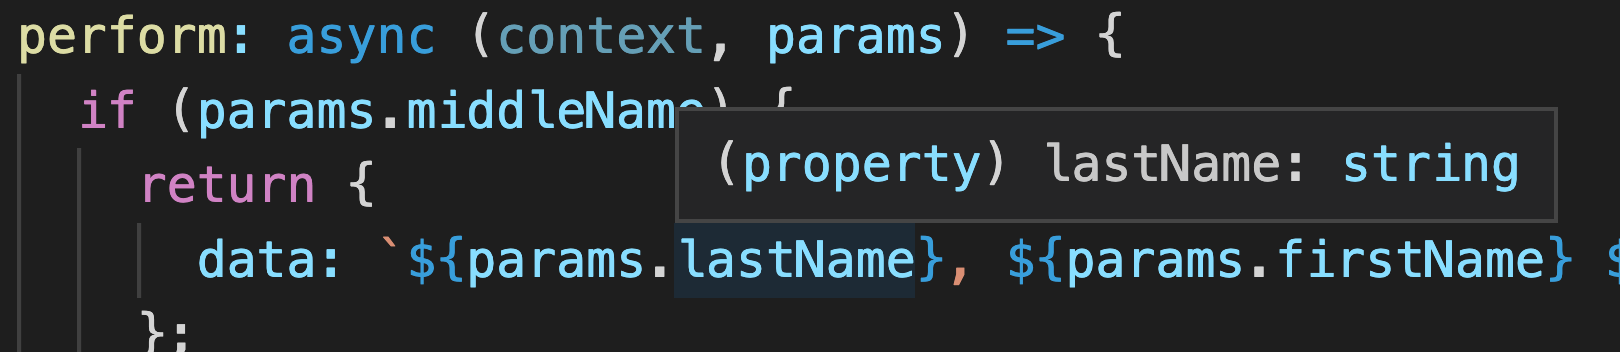 Screenshot of code editor showing string type